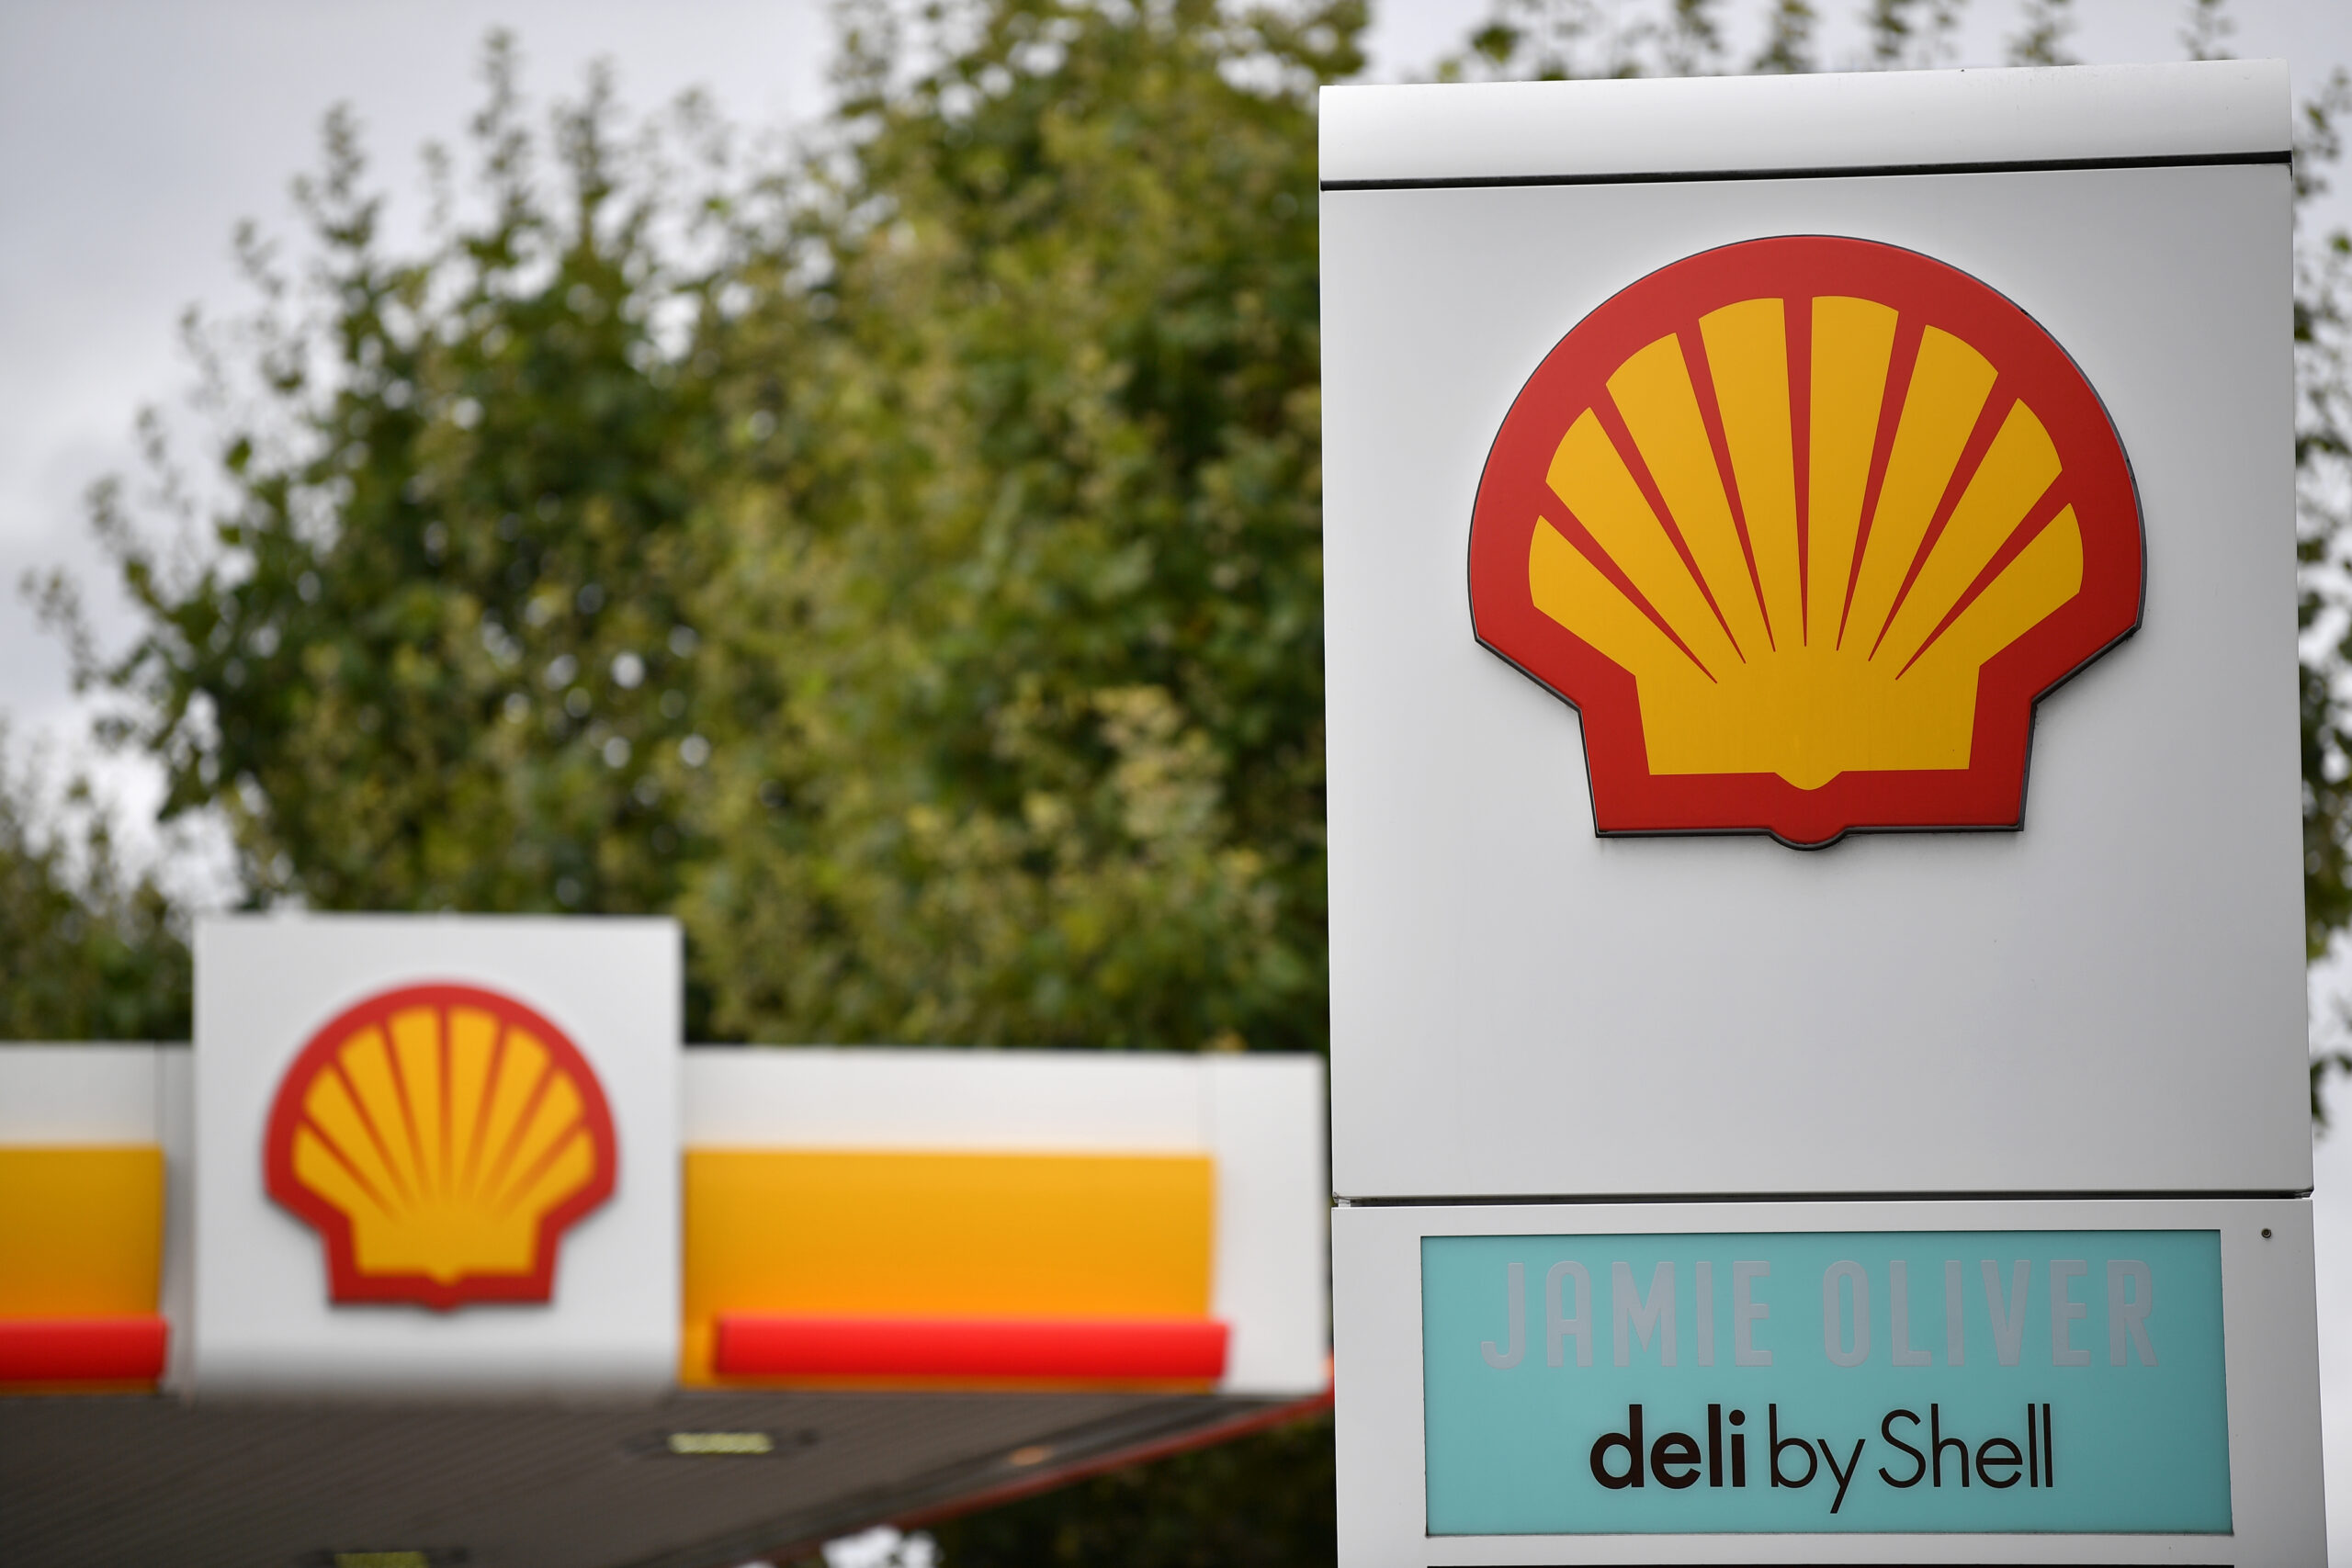 La pandemia provoca pérdidas colosales a Shell y otros gigantes petroleros